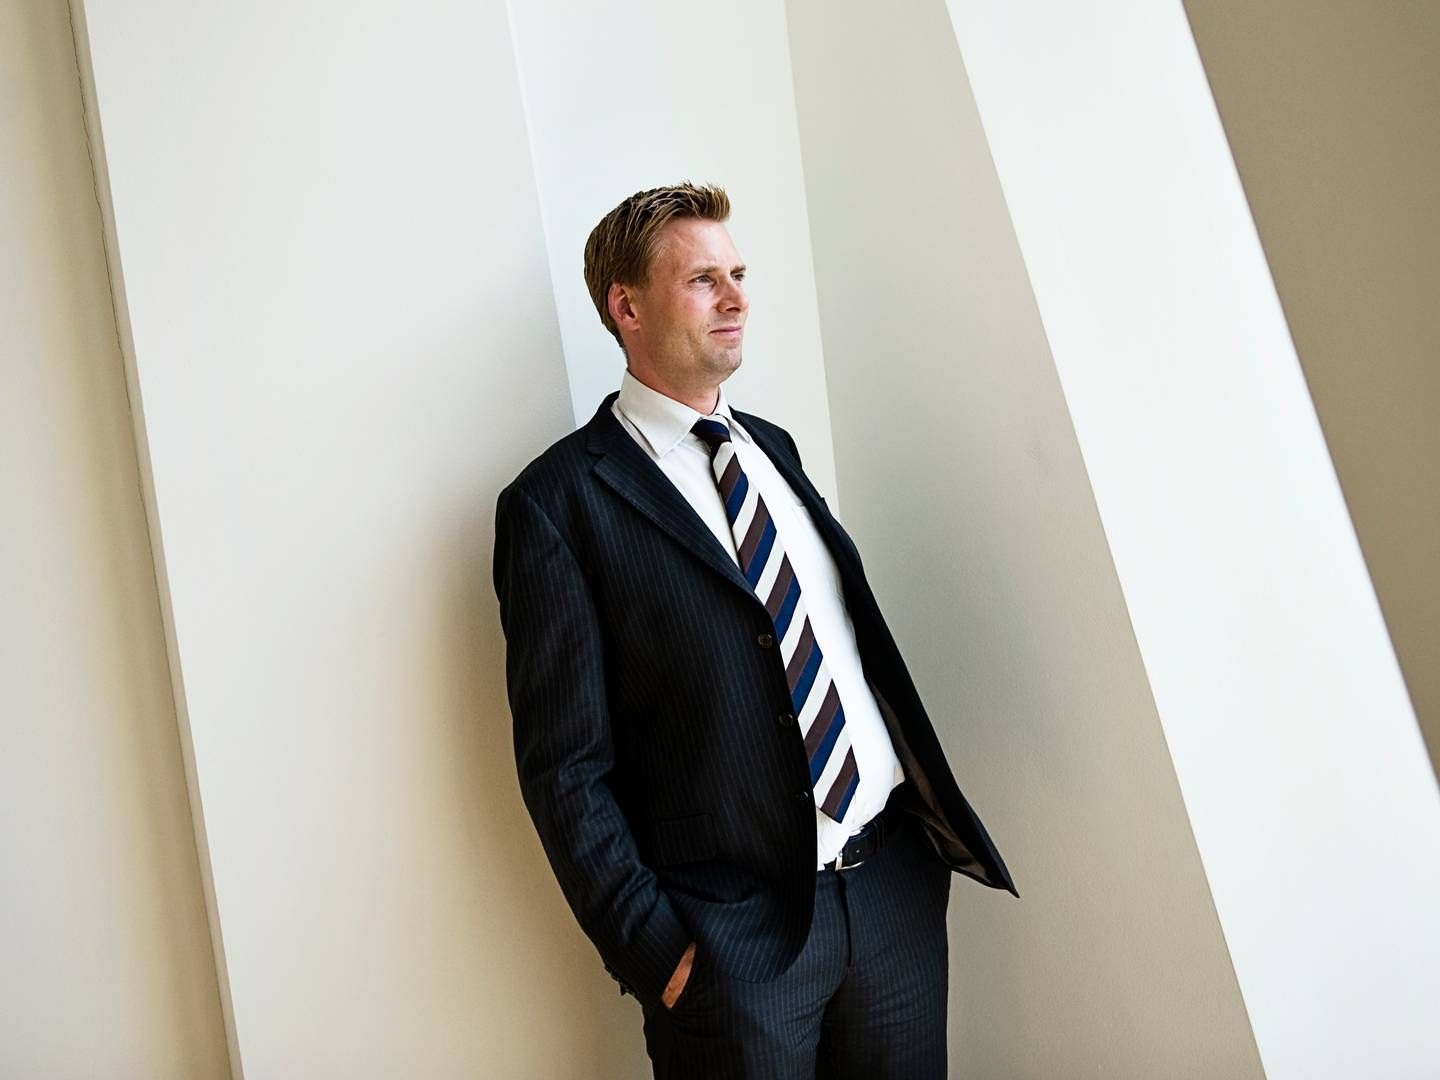 Kurator Nicolai Dyhr, advokatkontoret Horten. | Foto: Nikolaj Svennevig